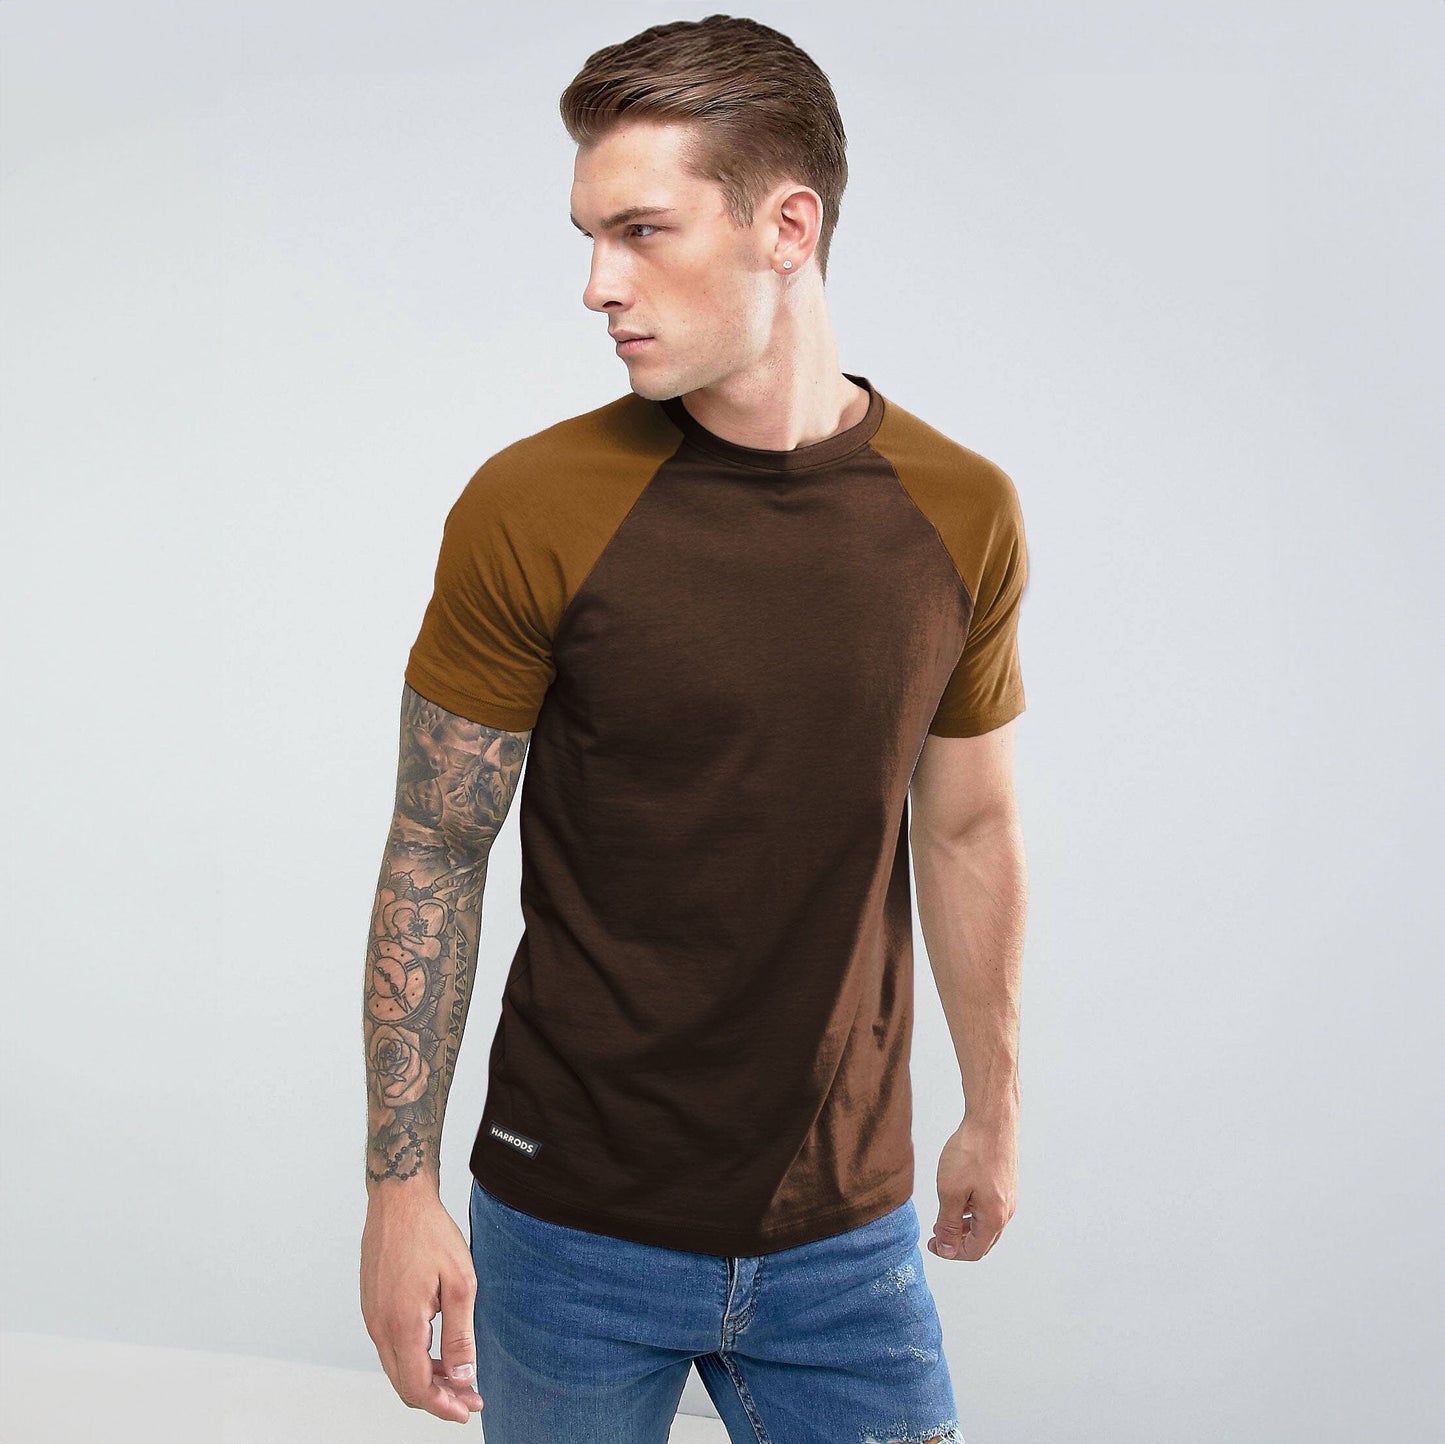 Harrods Men's Contrast Sleeve Style Crew Neck Tee Shirt Men's Tee Shirt IBT Chocolate S 